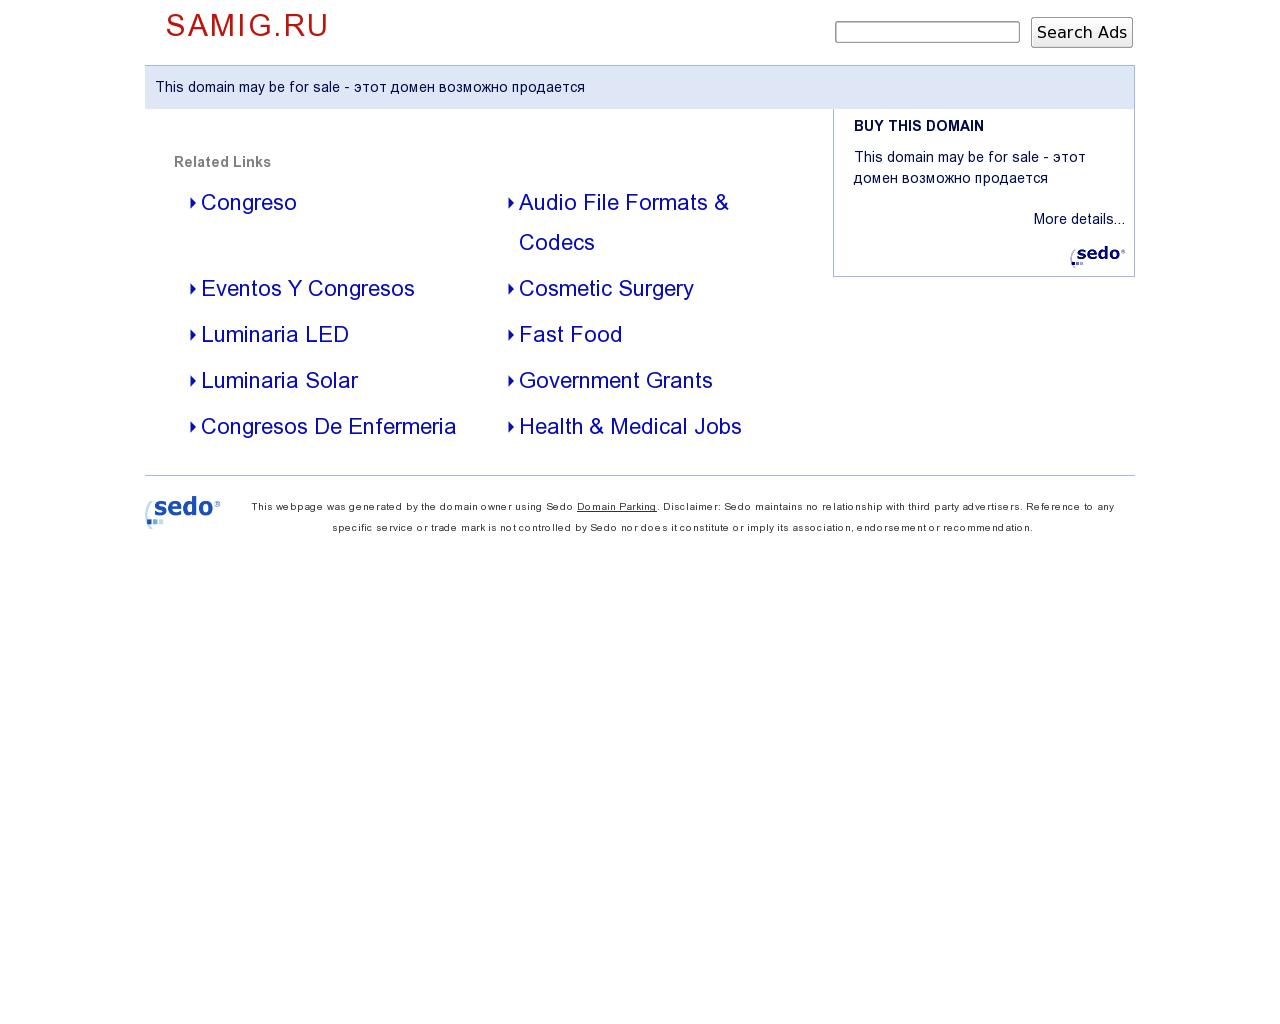 Изображение сайта samig.ru в разрешении 1280x1024